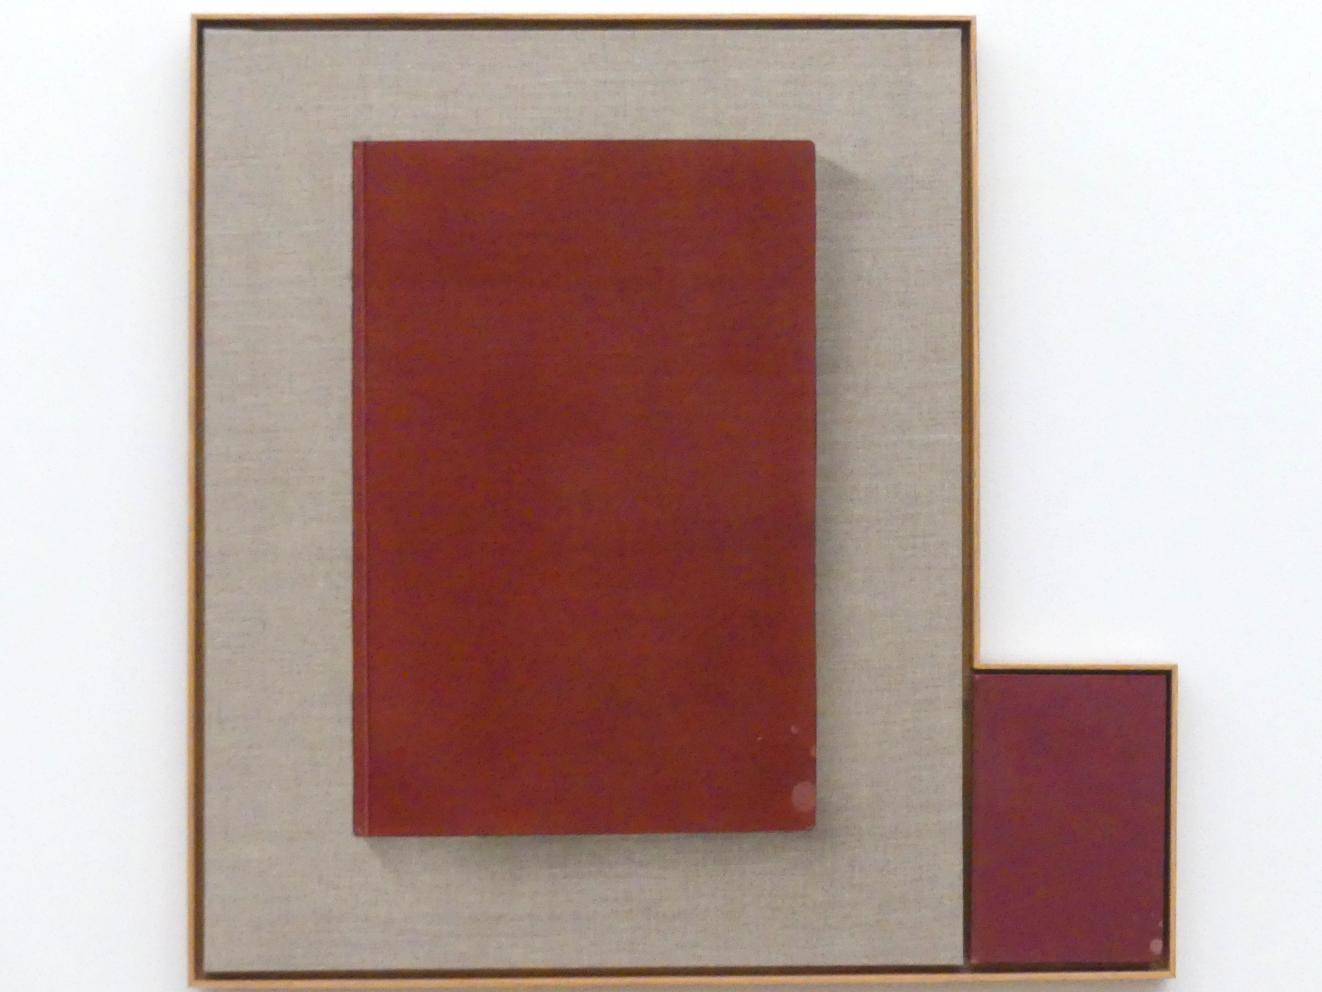 Edward Ruscha (1962–2013), Buch mit Flecken, München, Museum Brandhorst, Saal 0.7, 2013, Bild 1/2